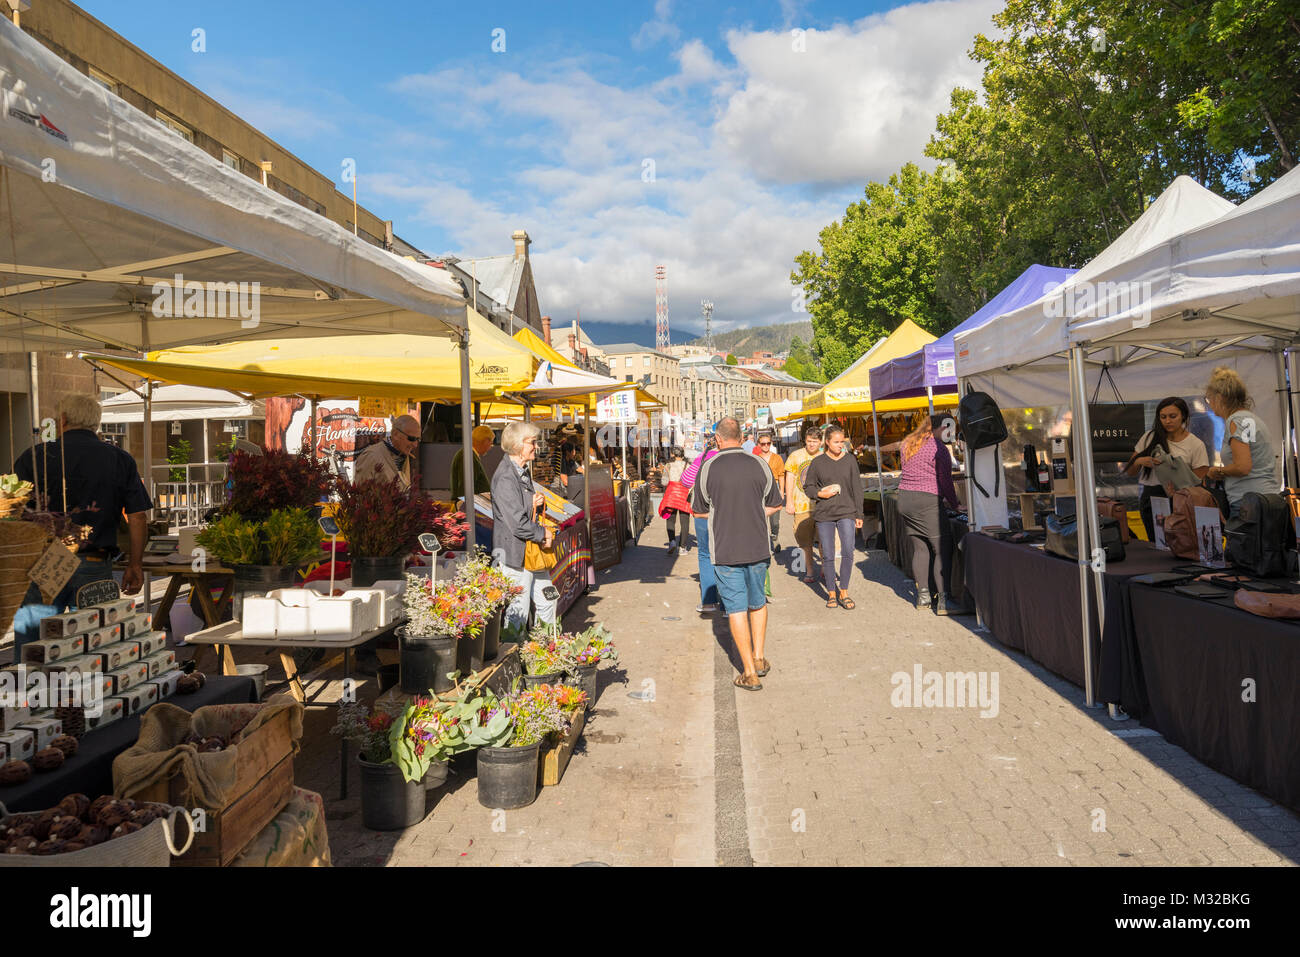 Le marché Salamanca est un marché de rue dans la région de Salamanca Place, Hobart, Tasmanie, Australie Banque D'Images